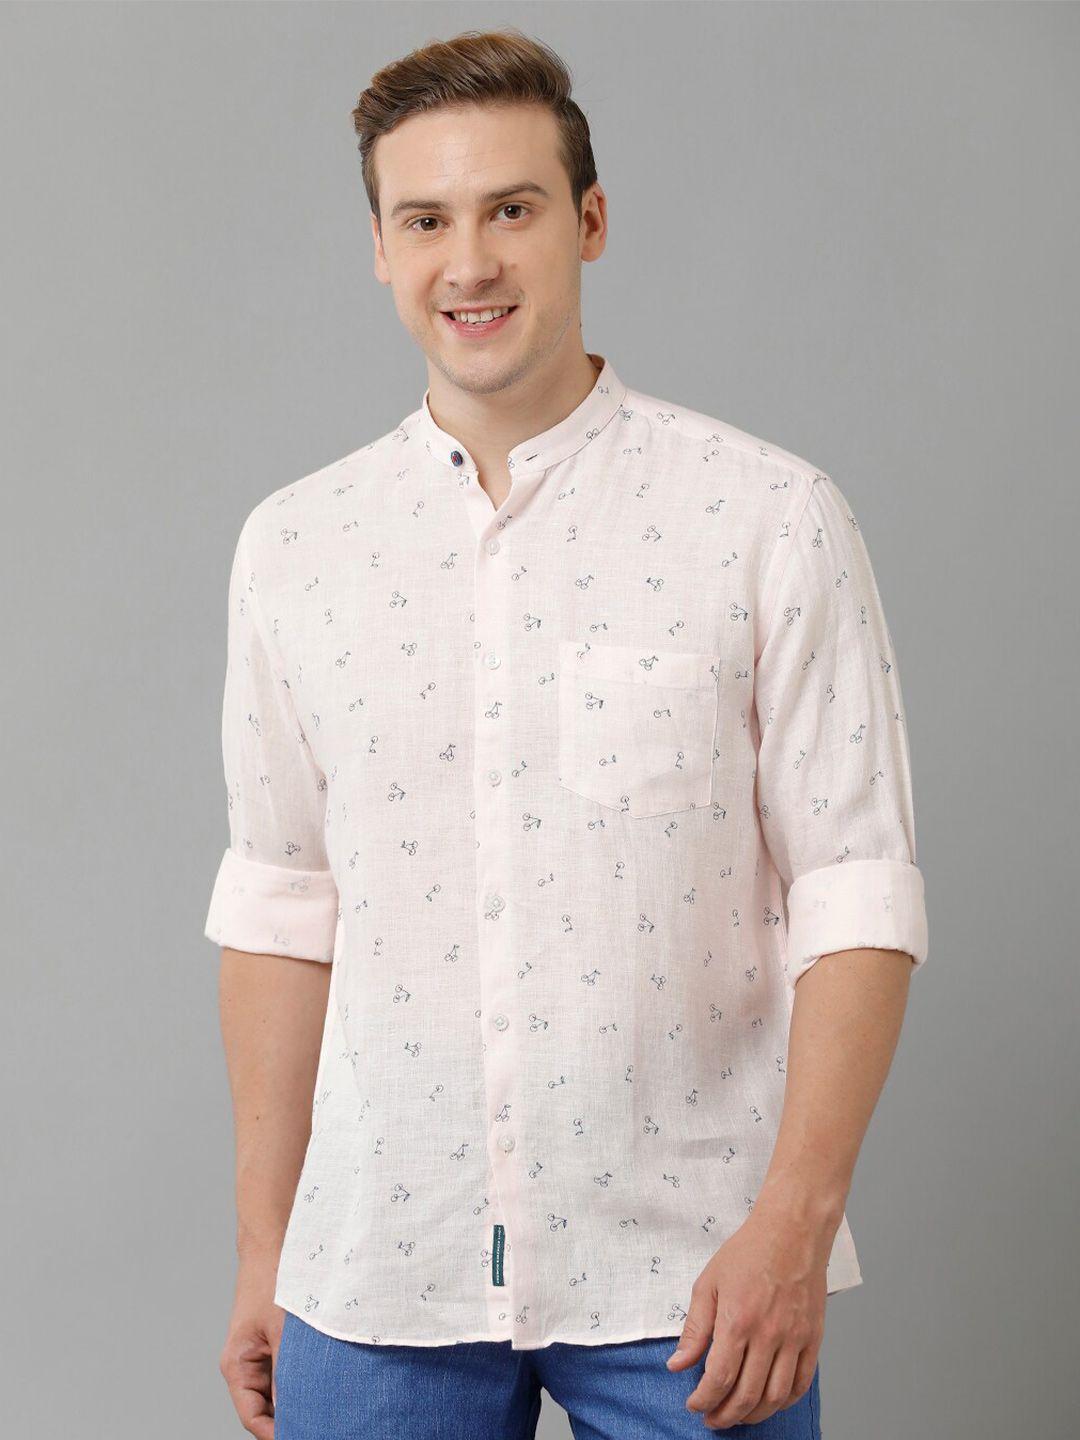 linen club conversational printed mandarin collar pure linen casual shirt